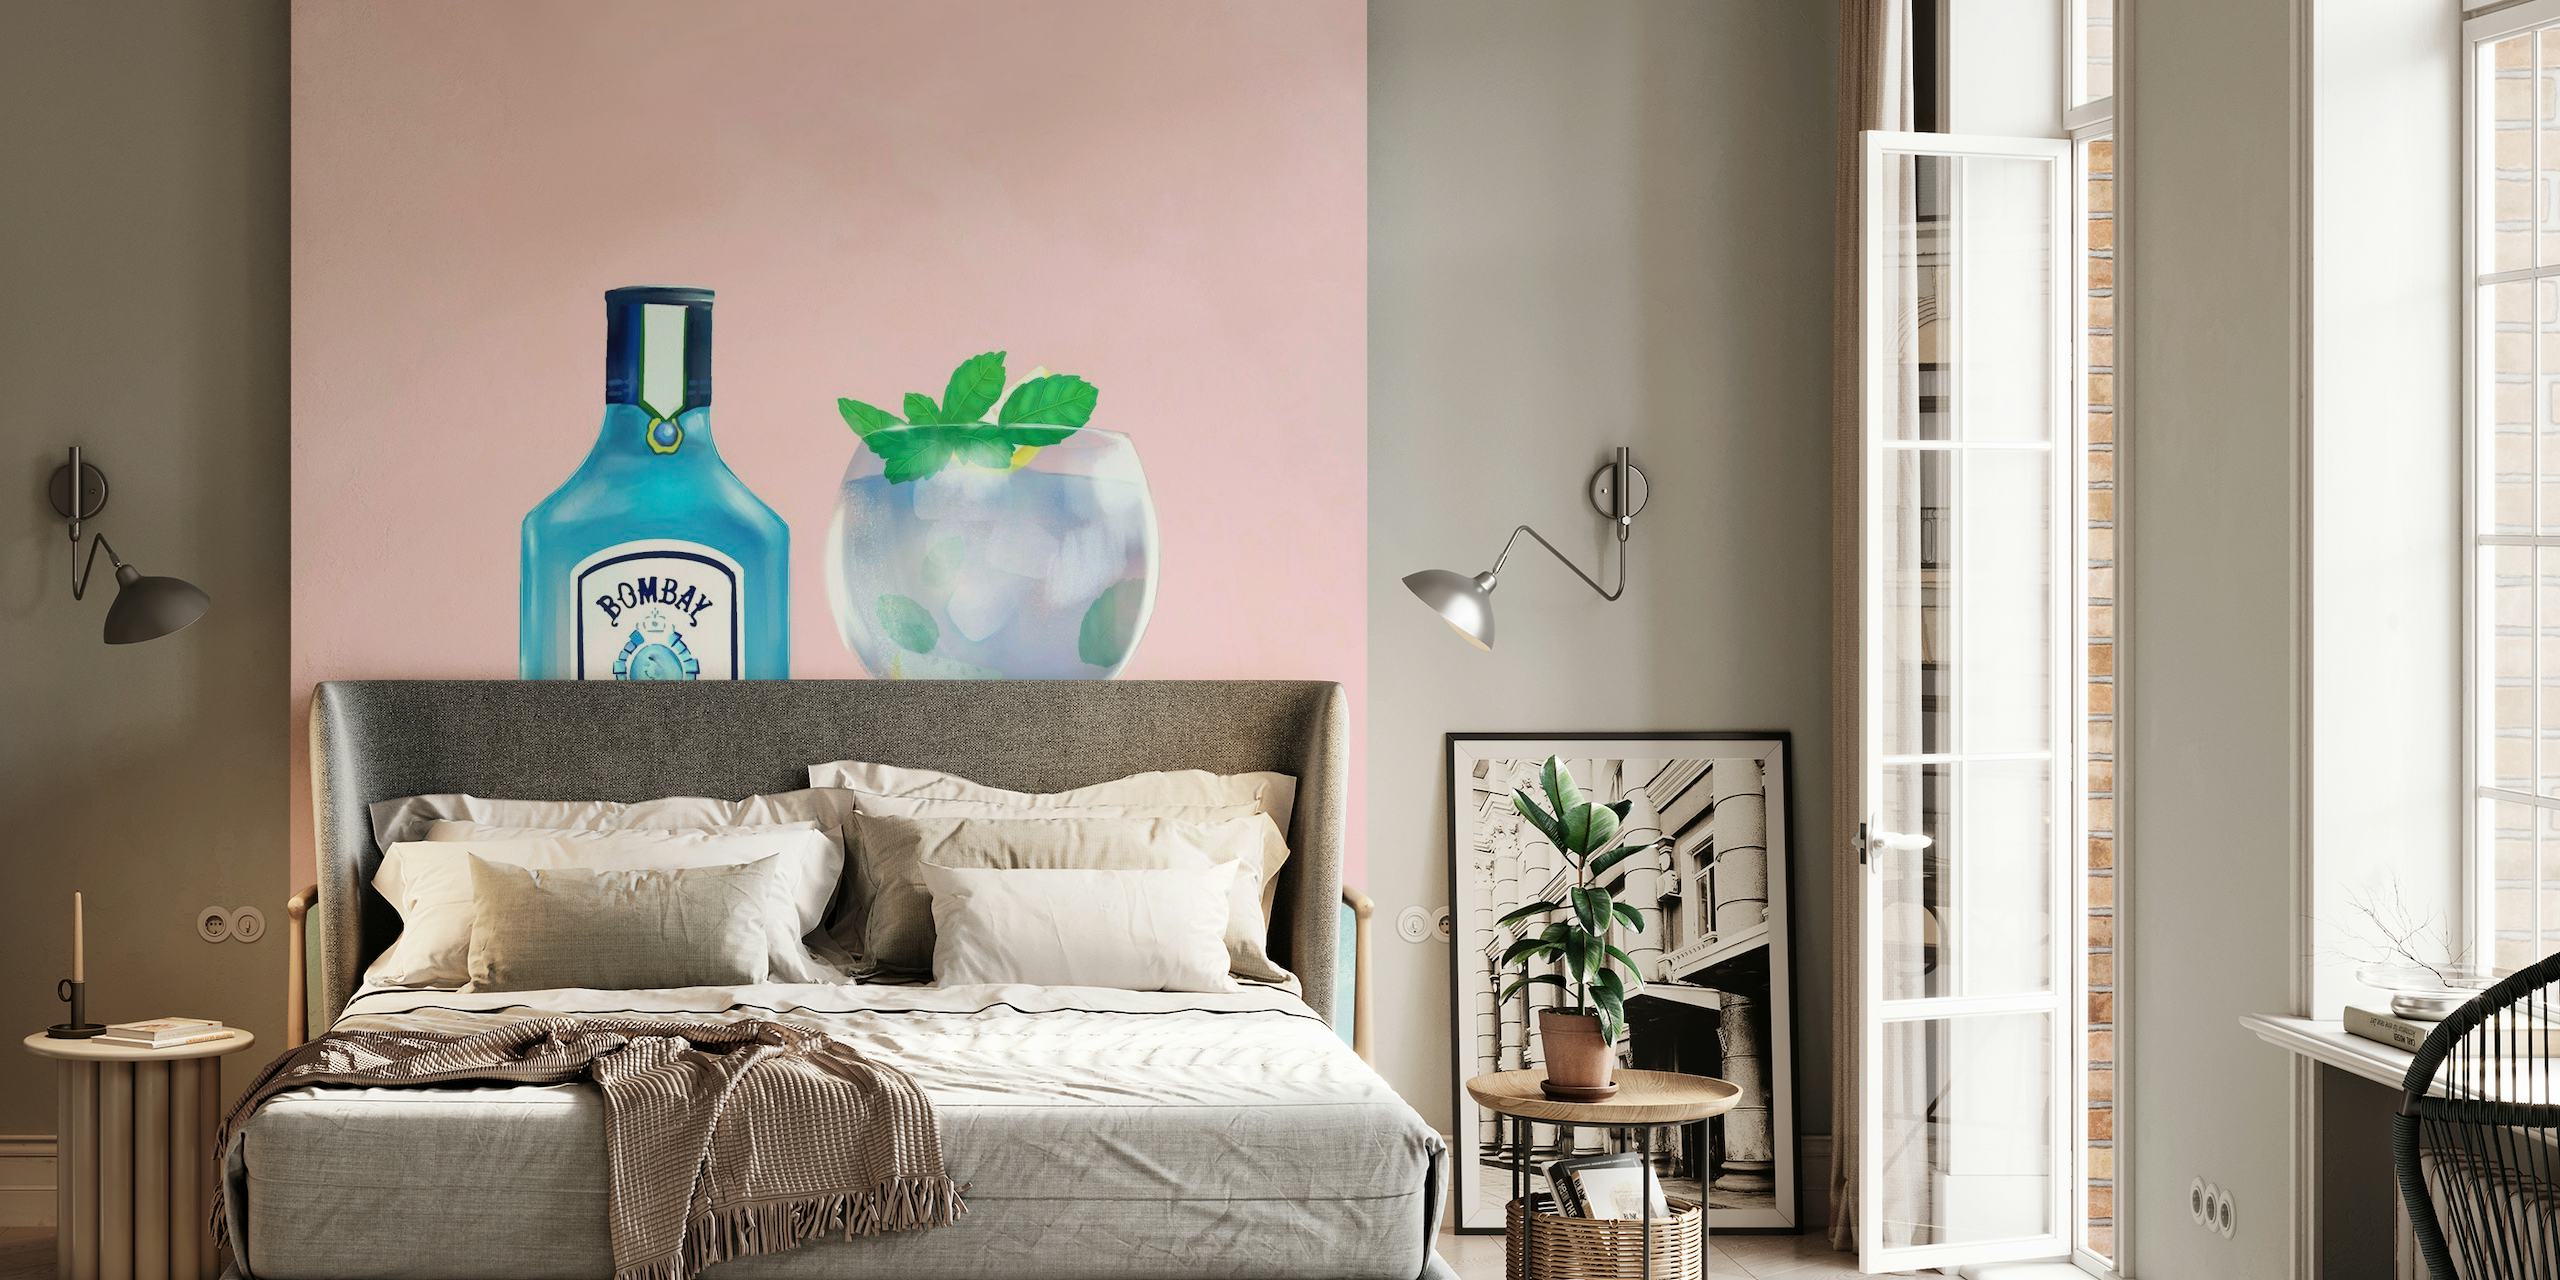 Fotomural vinílico de parede de garrafa de gim e vidro de coquetel com detalhes em limão e hortelã em um fundo rosa suave